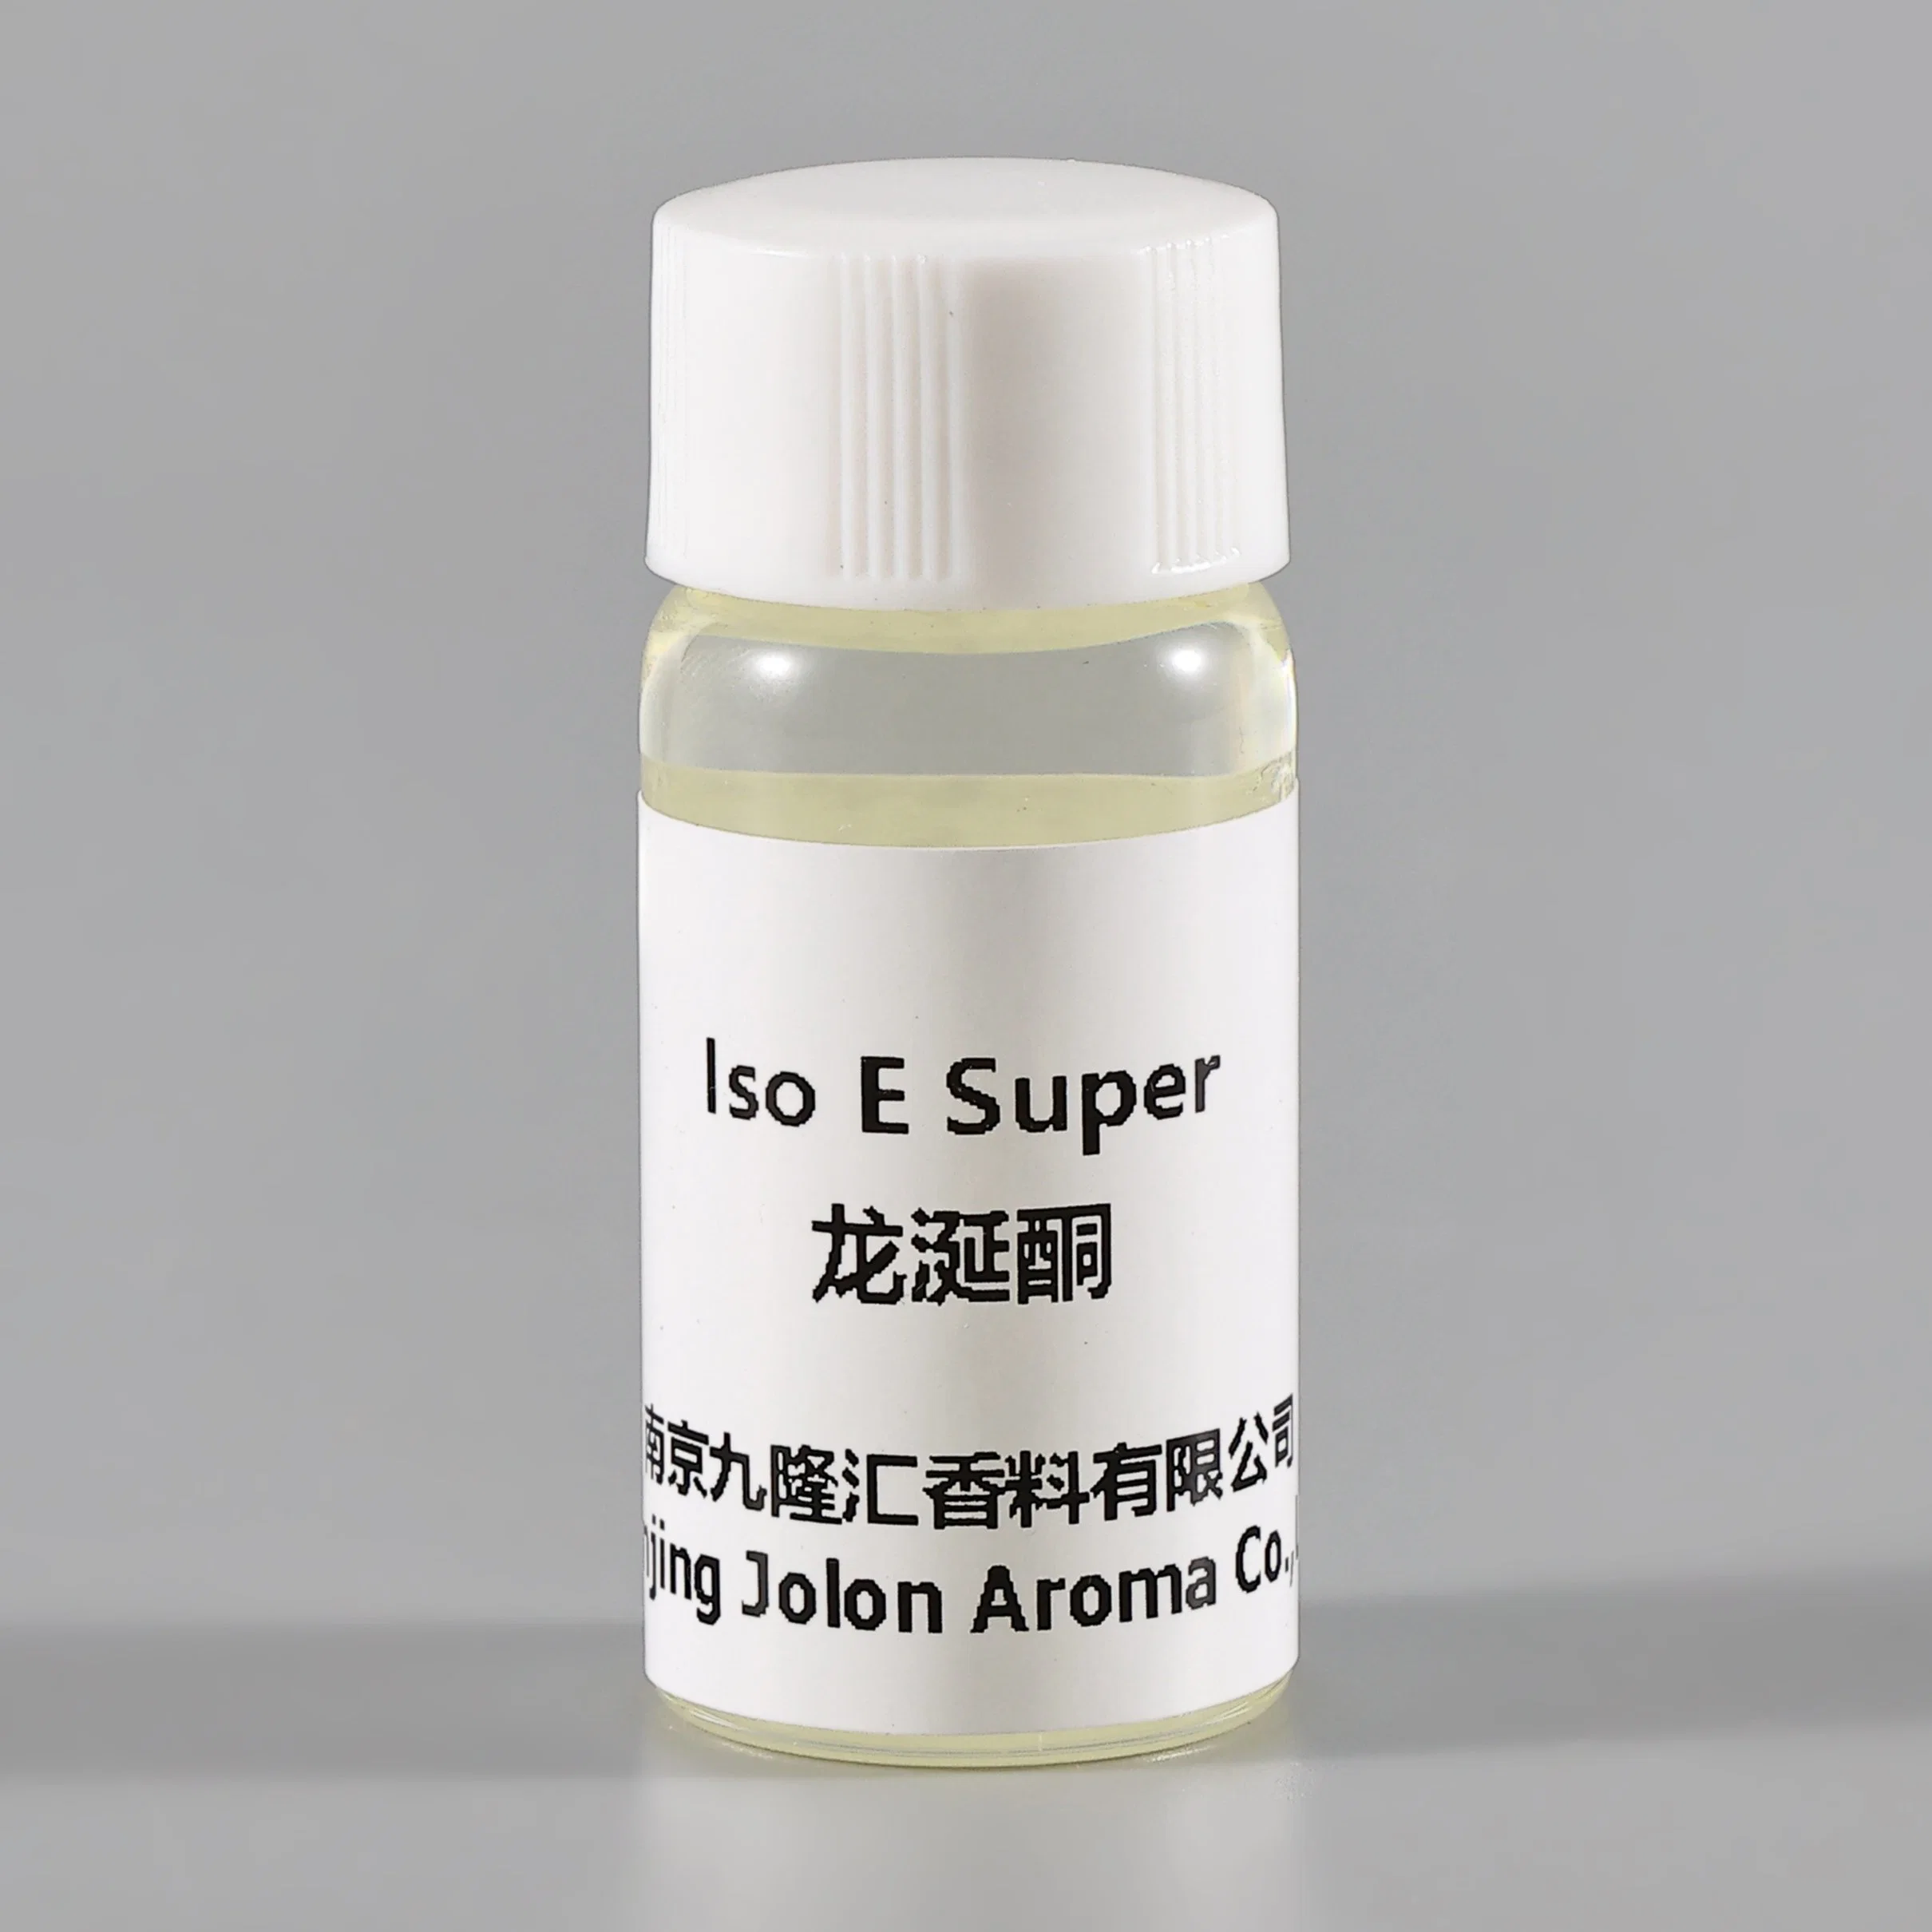 Versorgung hohe Qualität 99% Reinheit Additiv ISO E Super CAS 54464-57-2